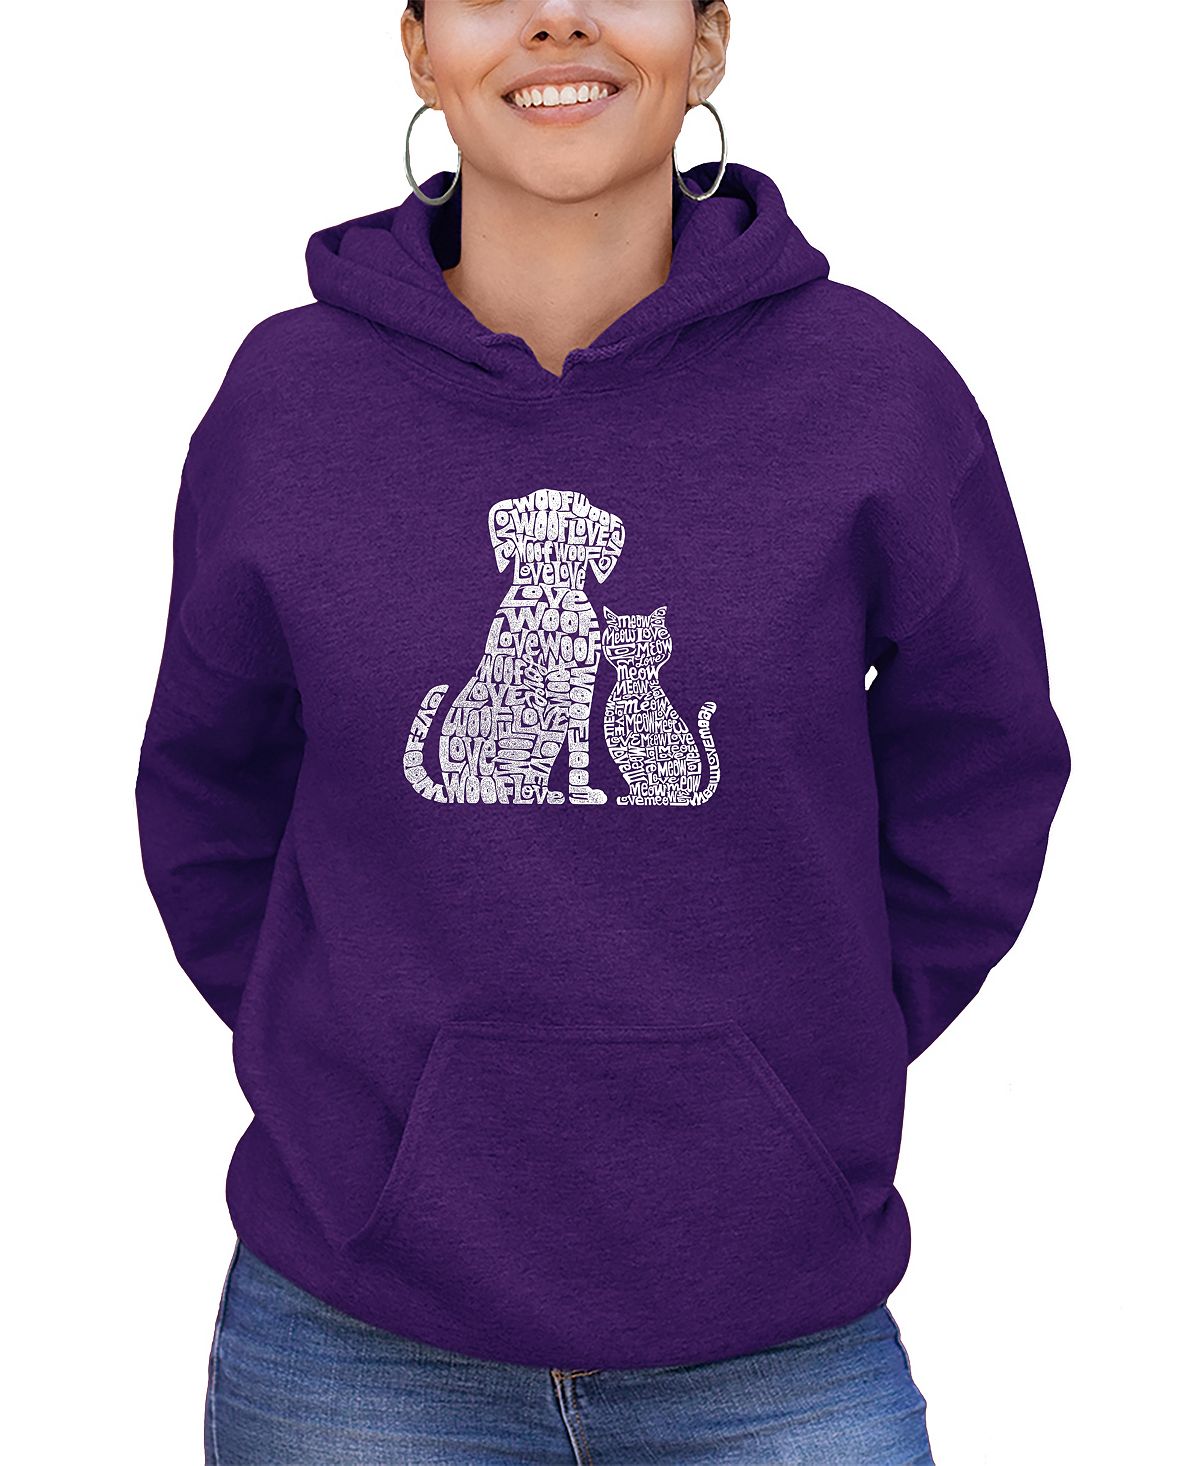 Женская толстовка word art dogs and cats с капюшоном LA Pop Art, фиолетовый